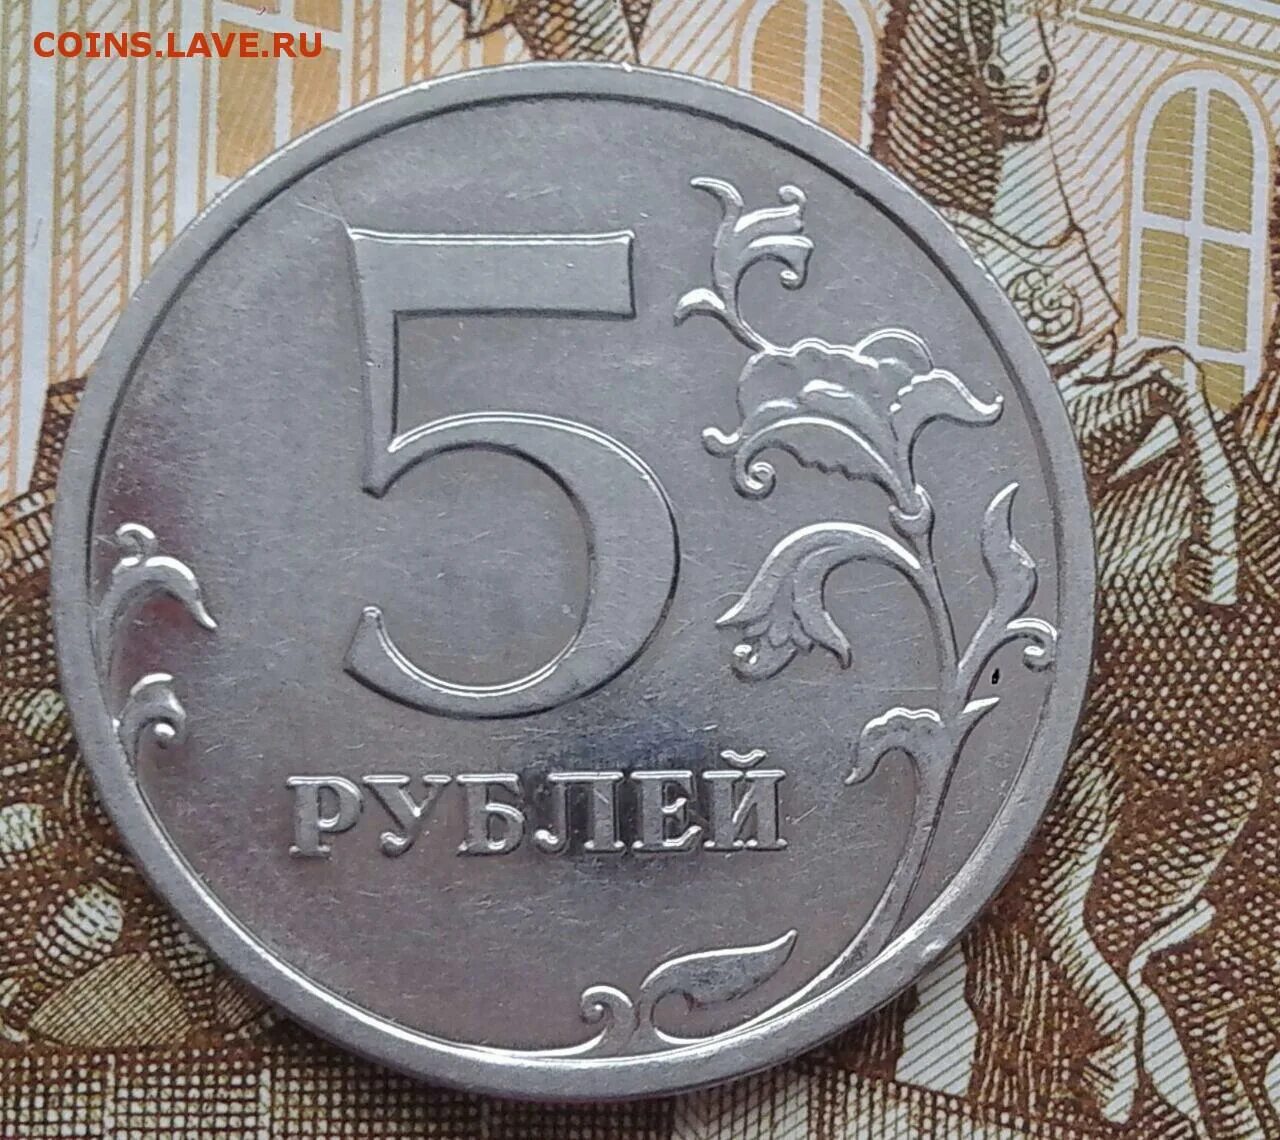 5 рублей 2009 ммд. 5 Рублей 2009 н5.5г шлифовка. 5 Рублей 2009. 5+Рублей+2009+ММД+магнитная+шт.5.5+фото+. 5 Р 2009 ММД старые.